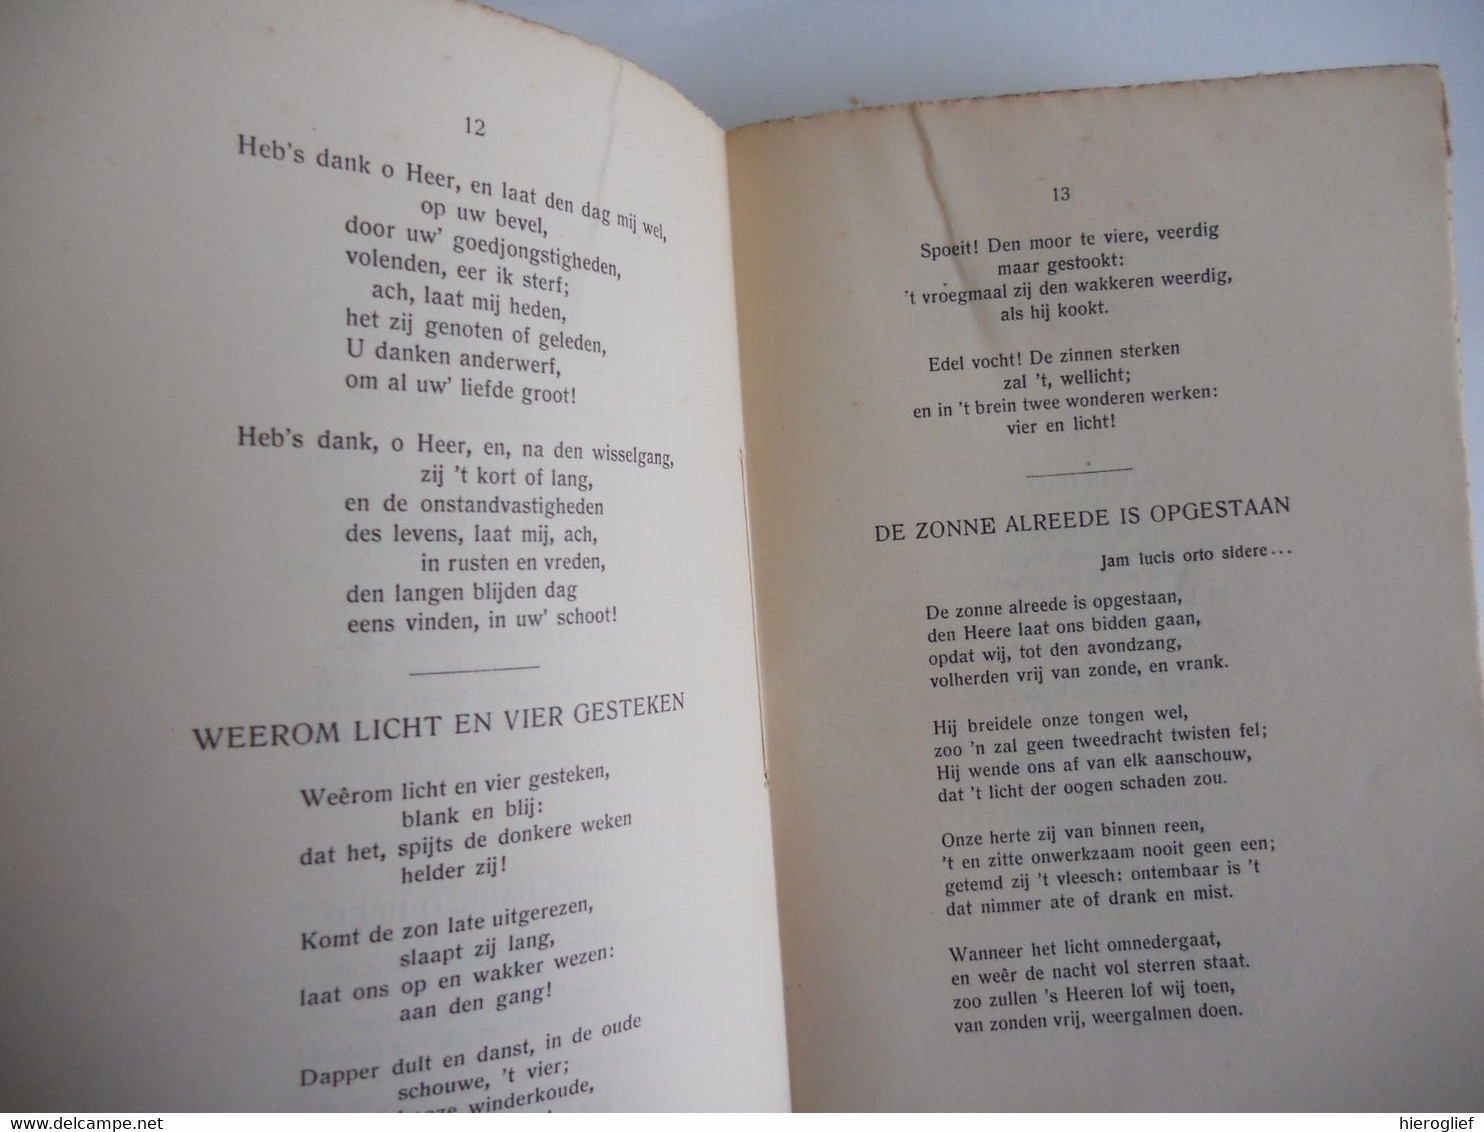 GUIDO GEZELLE 's DICHTWERKEN TIJDKRANS 2 Delen 1925/30 Brugge Kortrijk Roeselare - Poetry